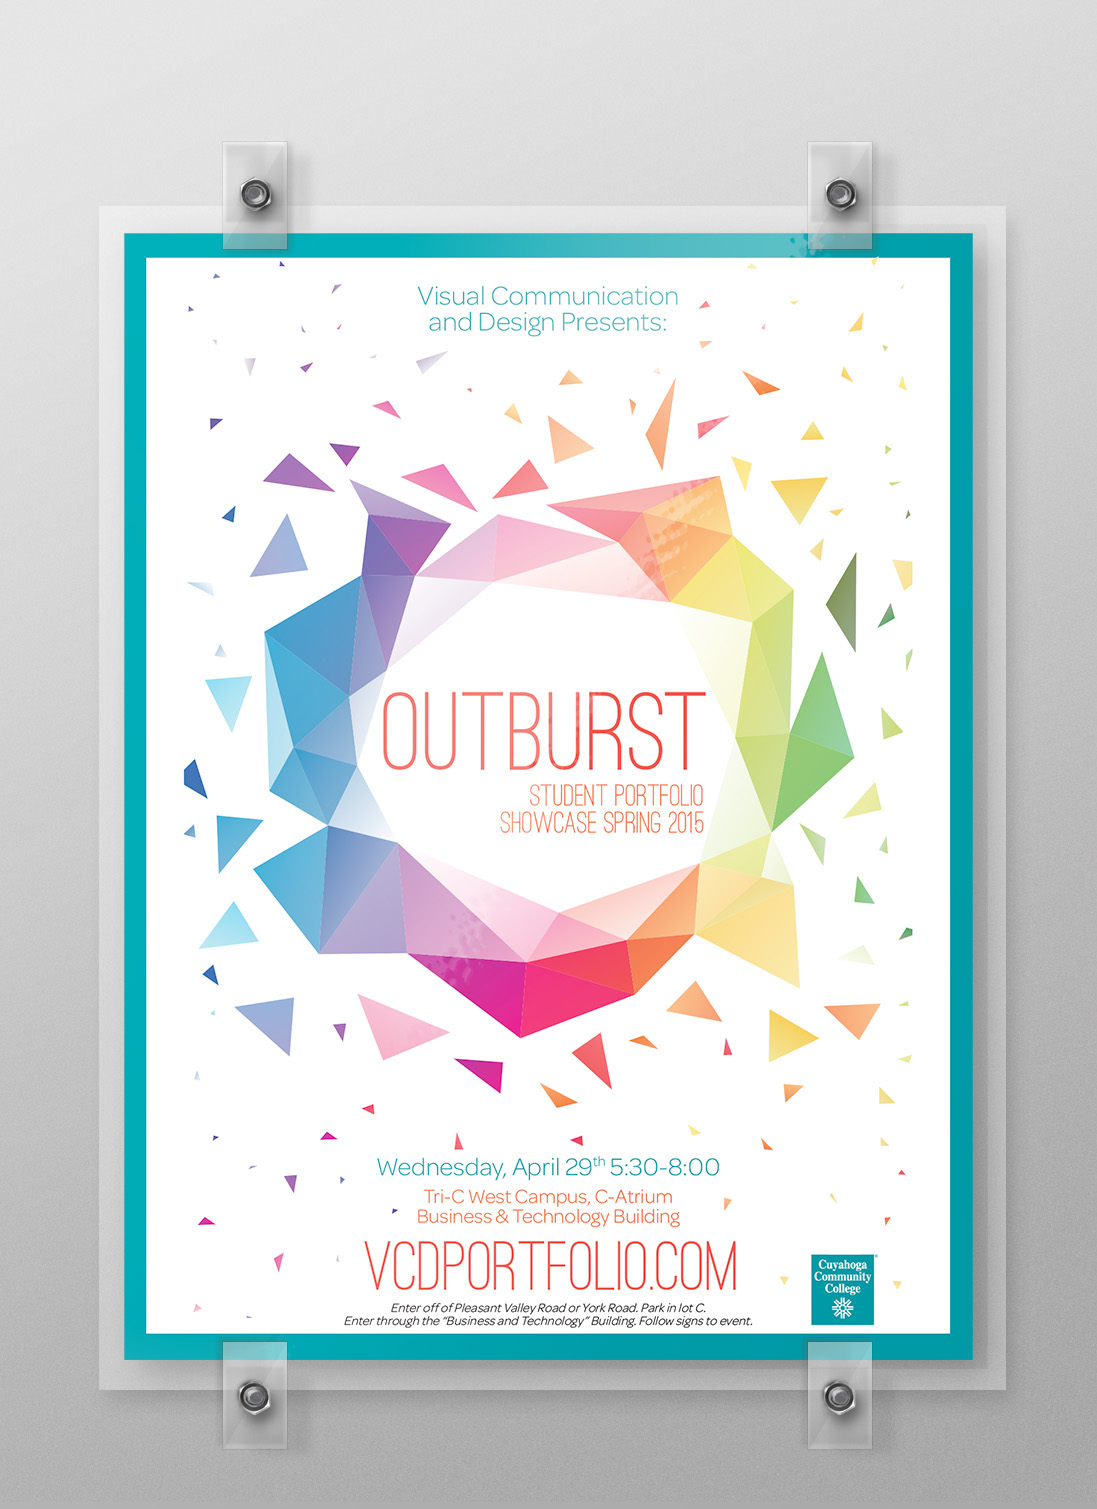 Outburst Student Portfolio Showcase Spring 2015 Theme on